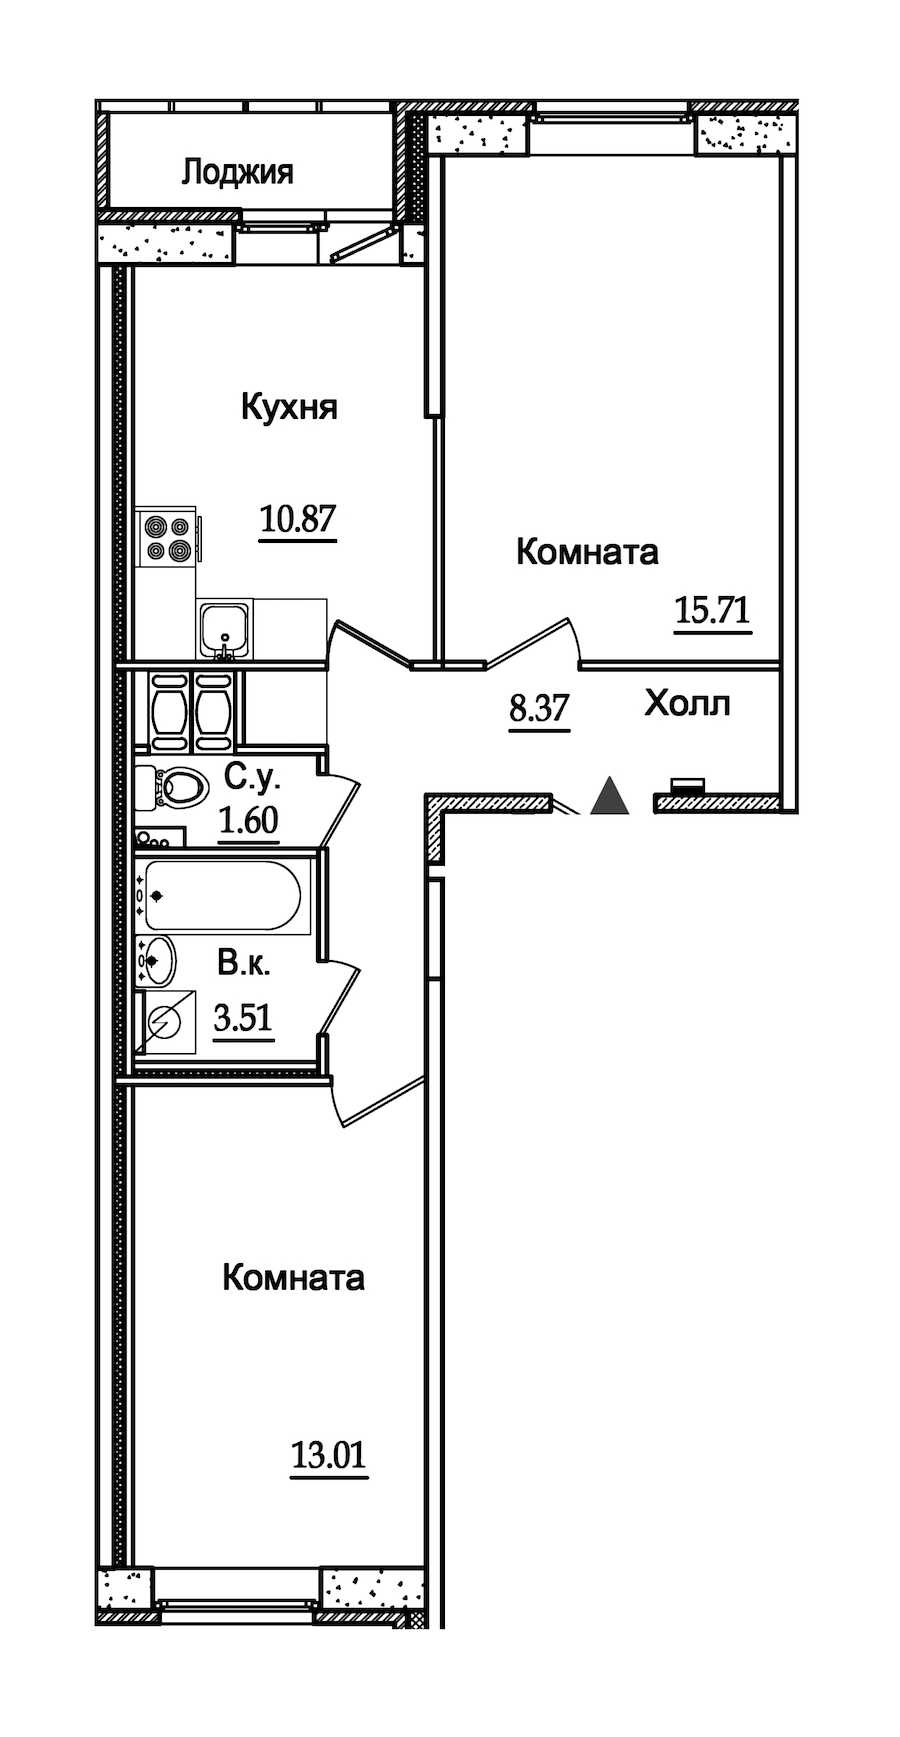 Двухкомнатная квартира в : площадь 54.37 м2 , этаж: 4 – купить в Санкт-Петербурге